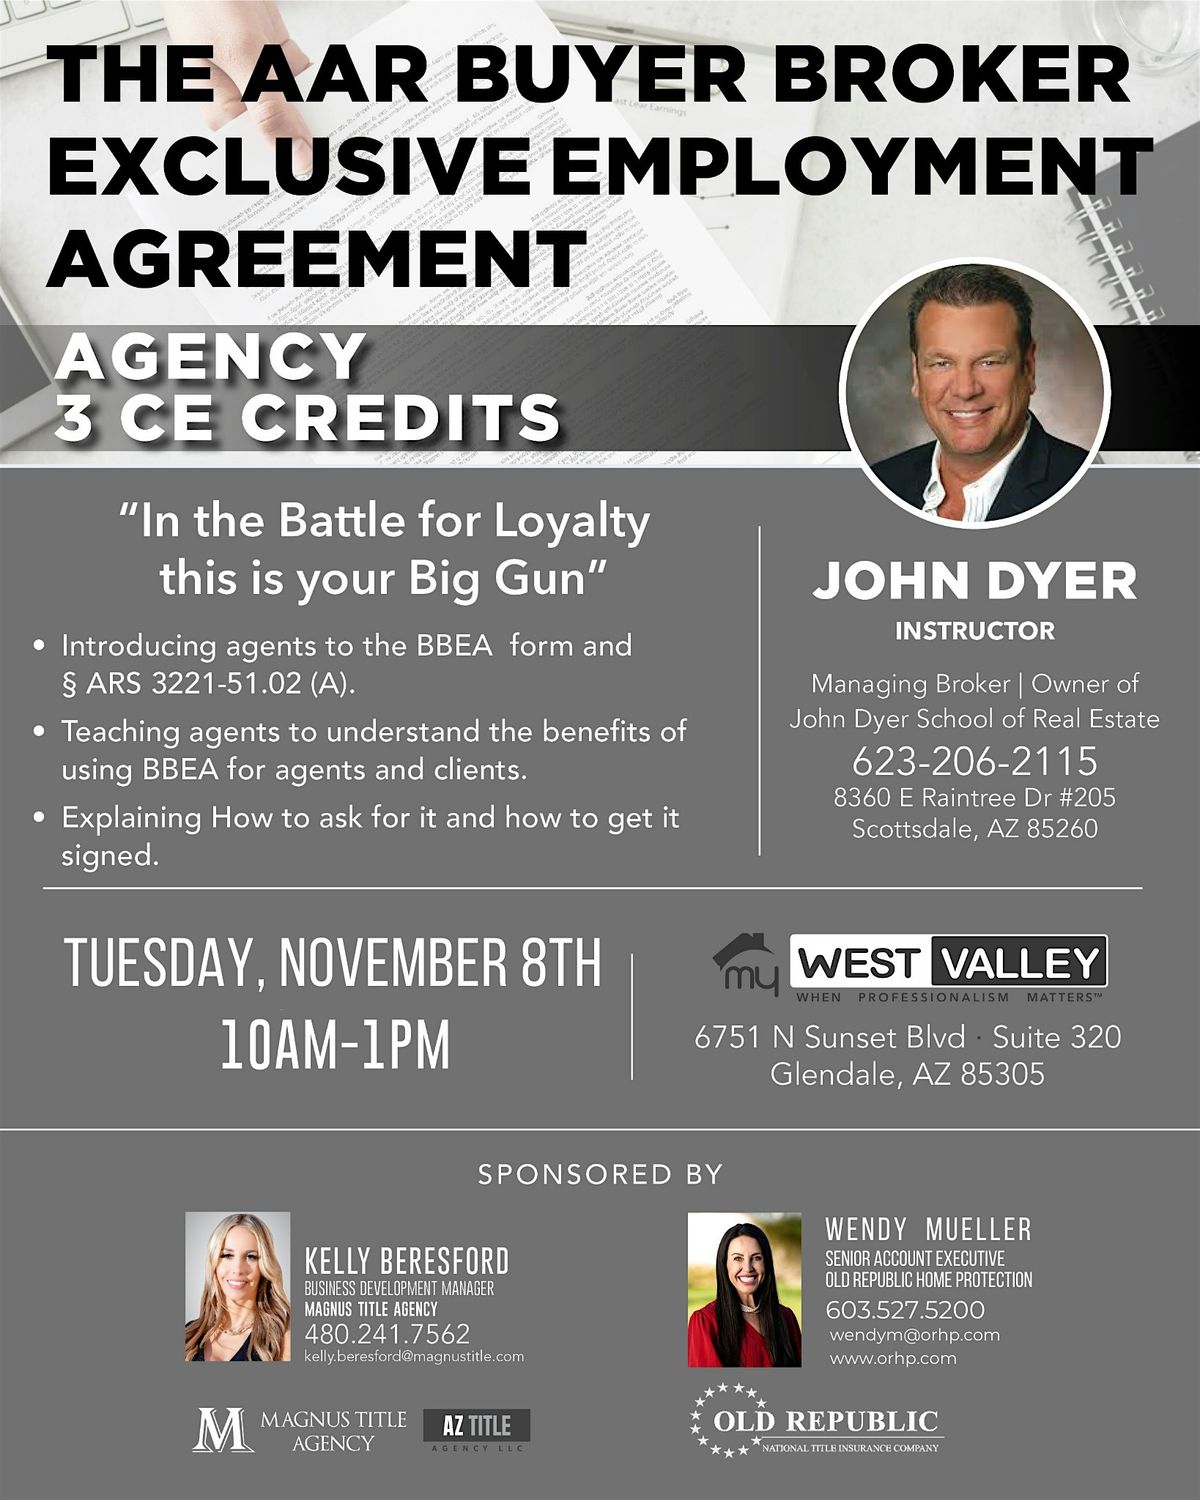 West Valley CE: The AAR Buyer Broker Exclusive Employment Agreement